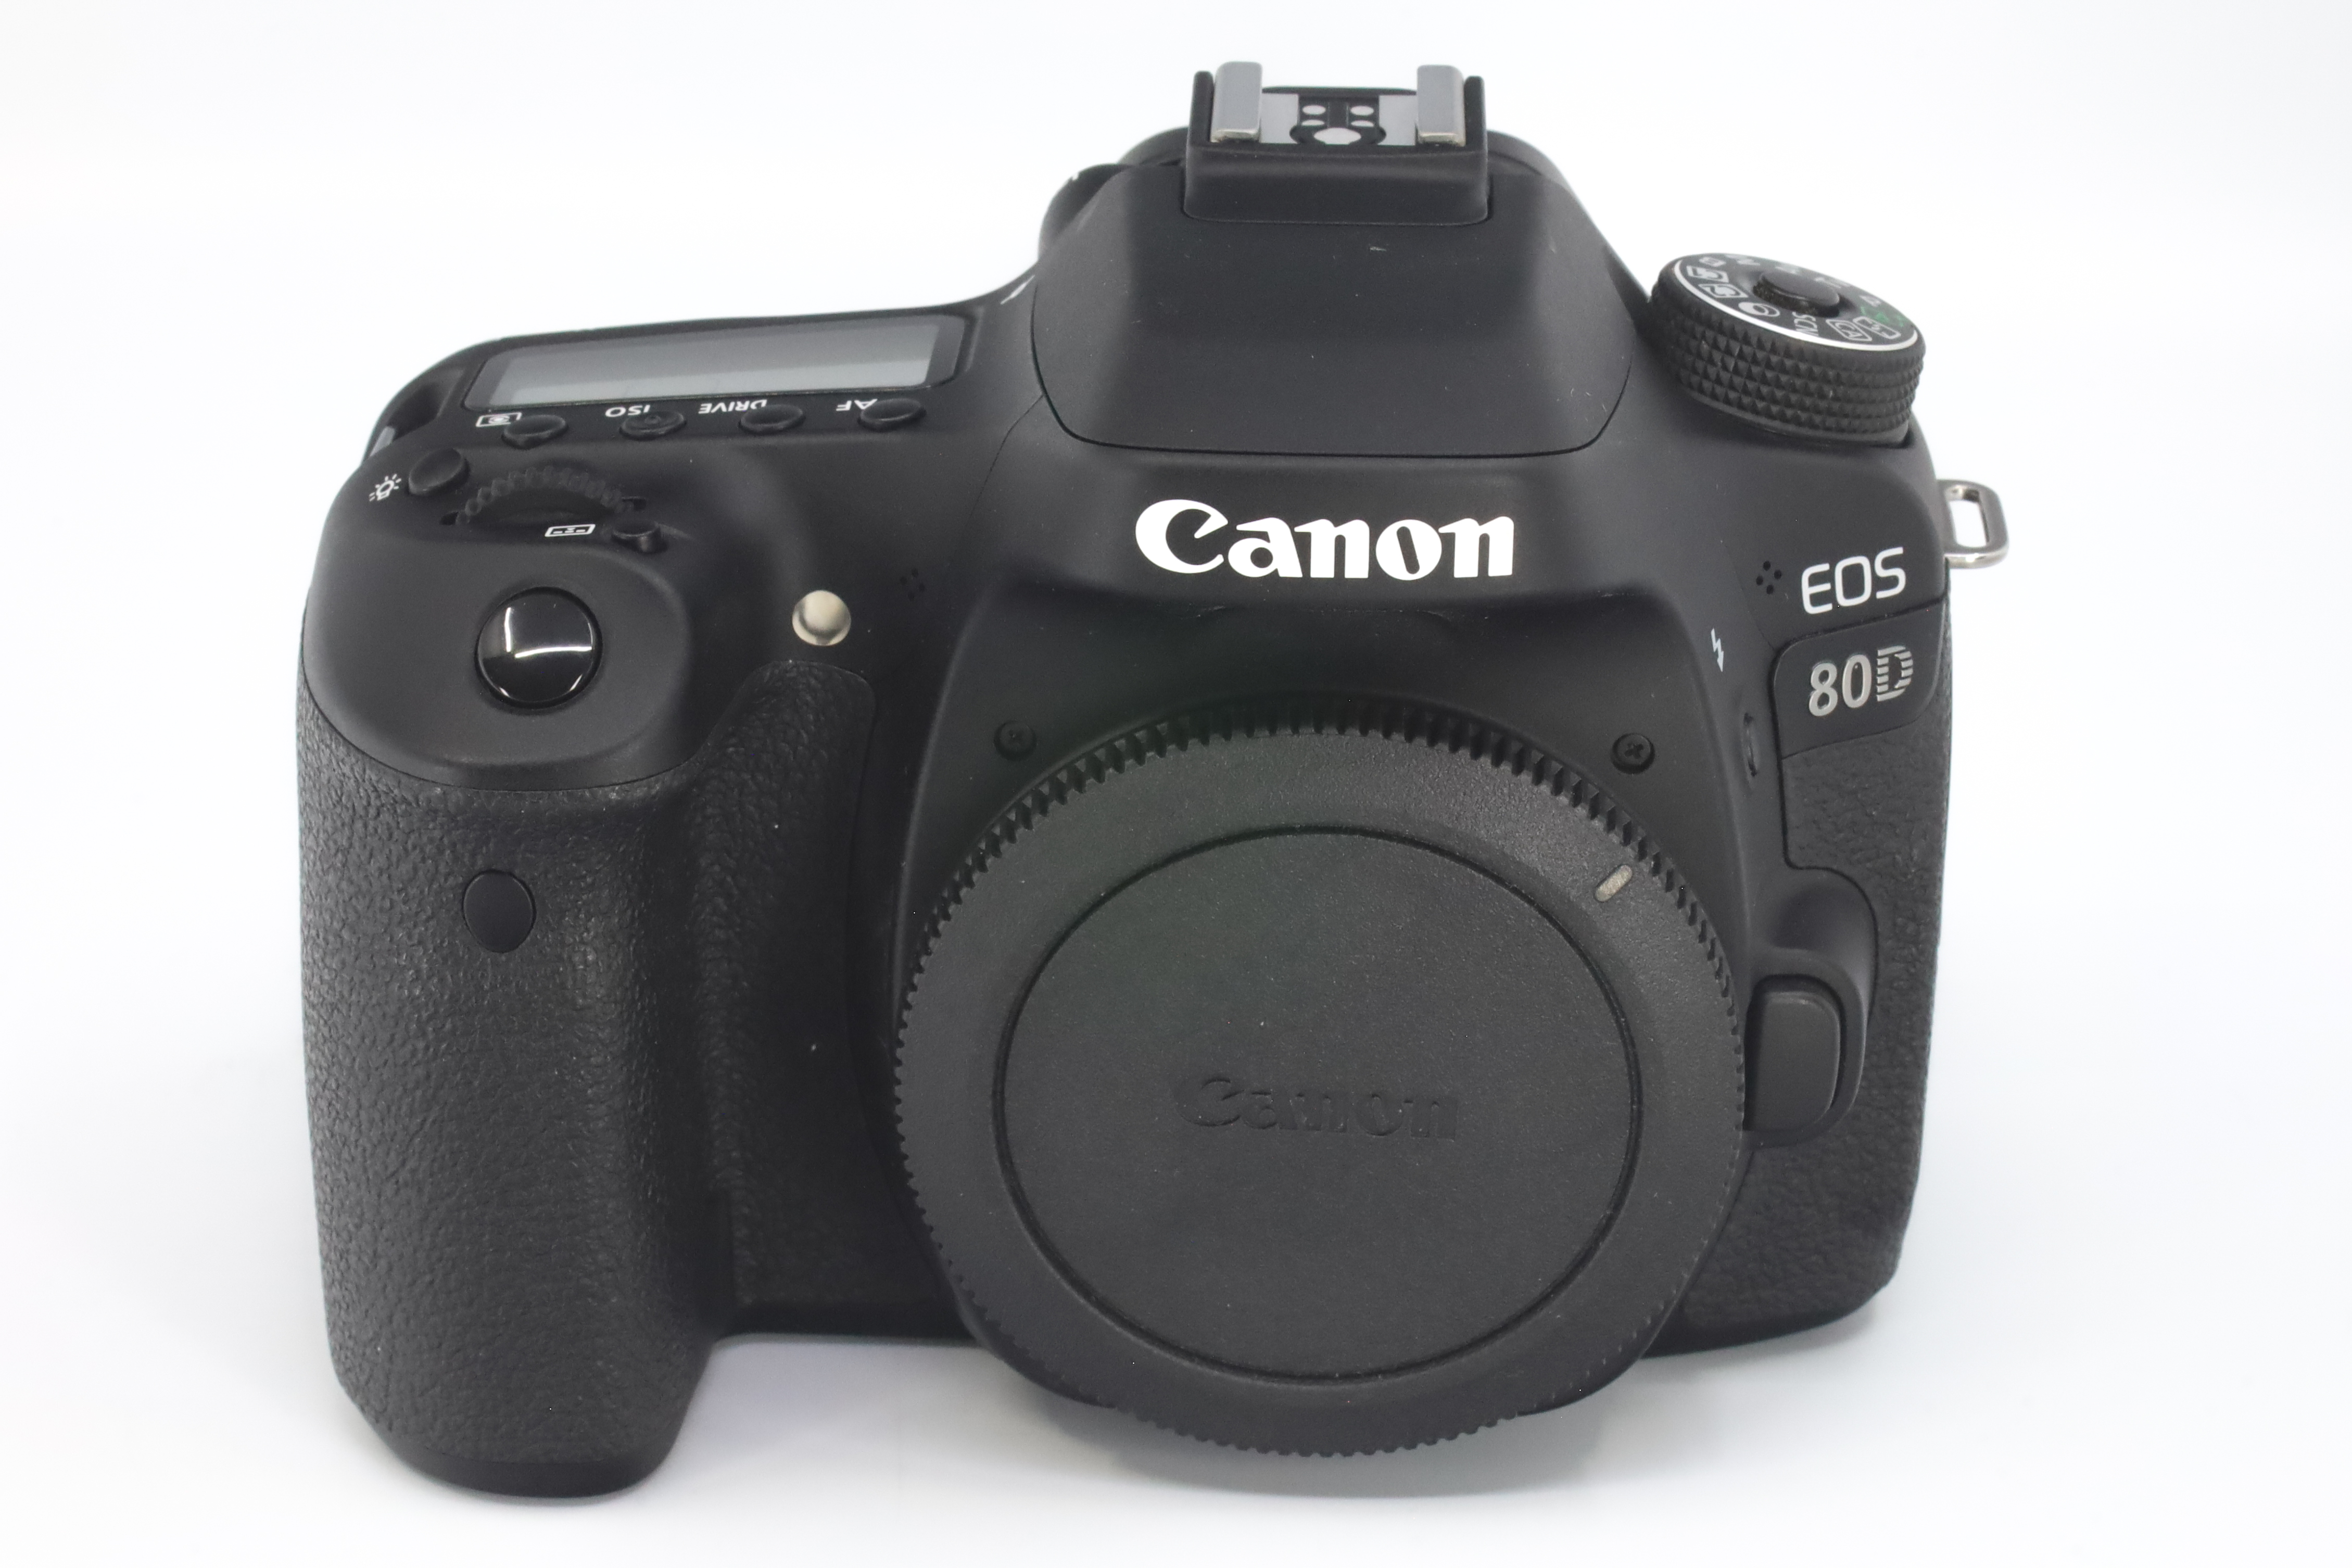 Canon 80D 062021003276 7 1